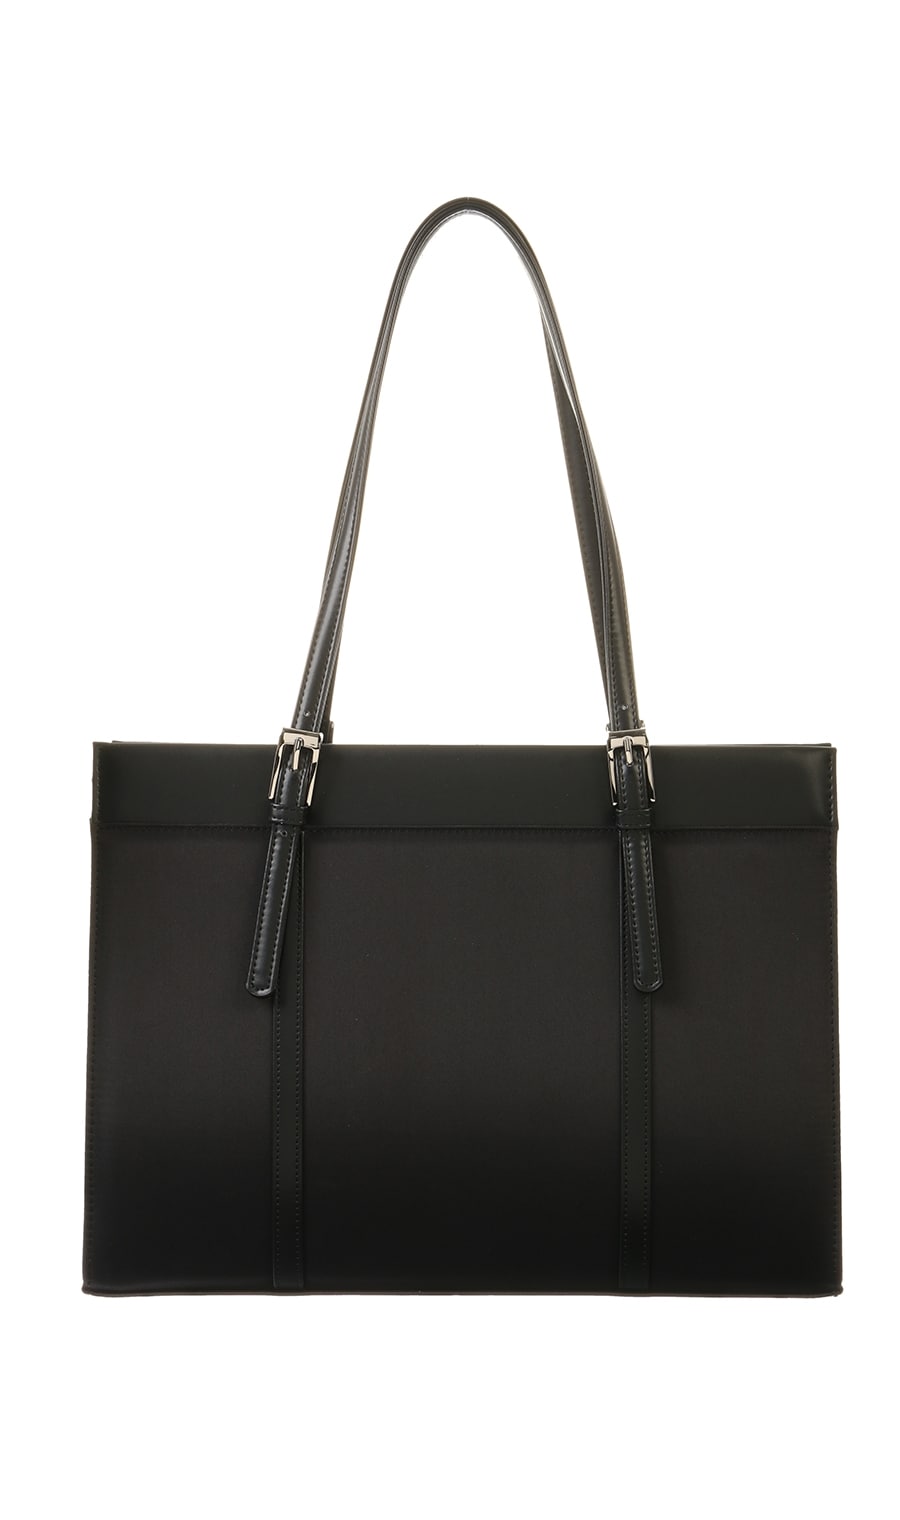 就活生におすすめの人気就活バッグ・リクルートバッグ・ビジネスバッグは黒色のシンプルなデザインが一番！